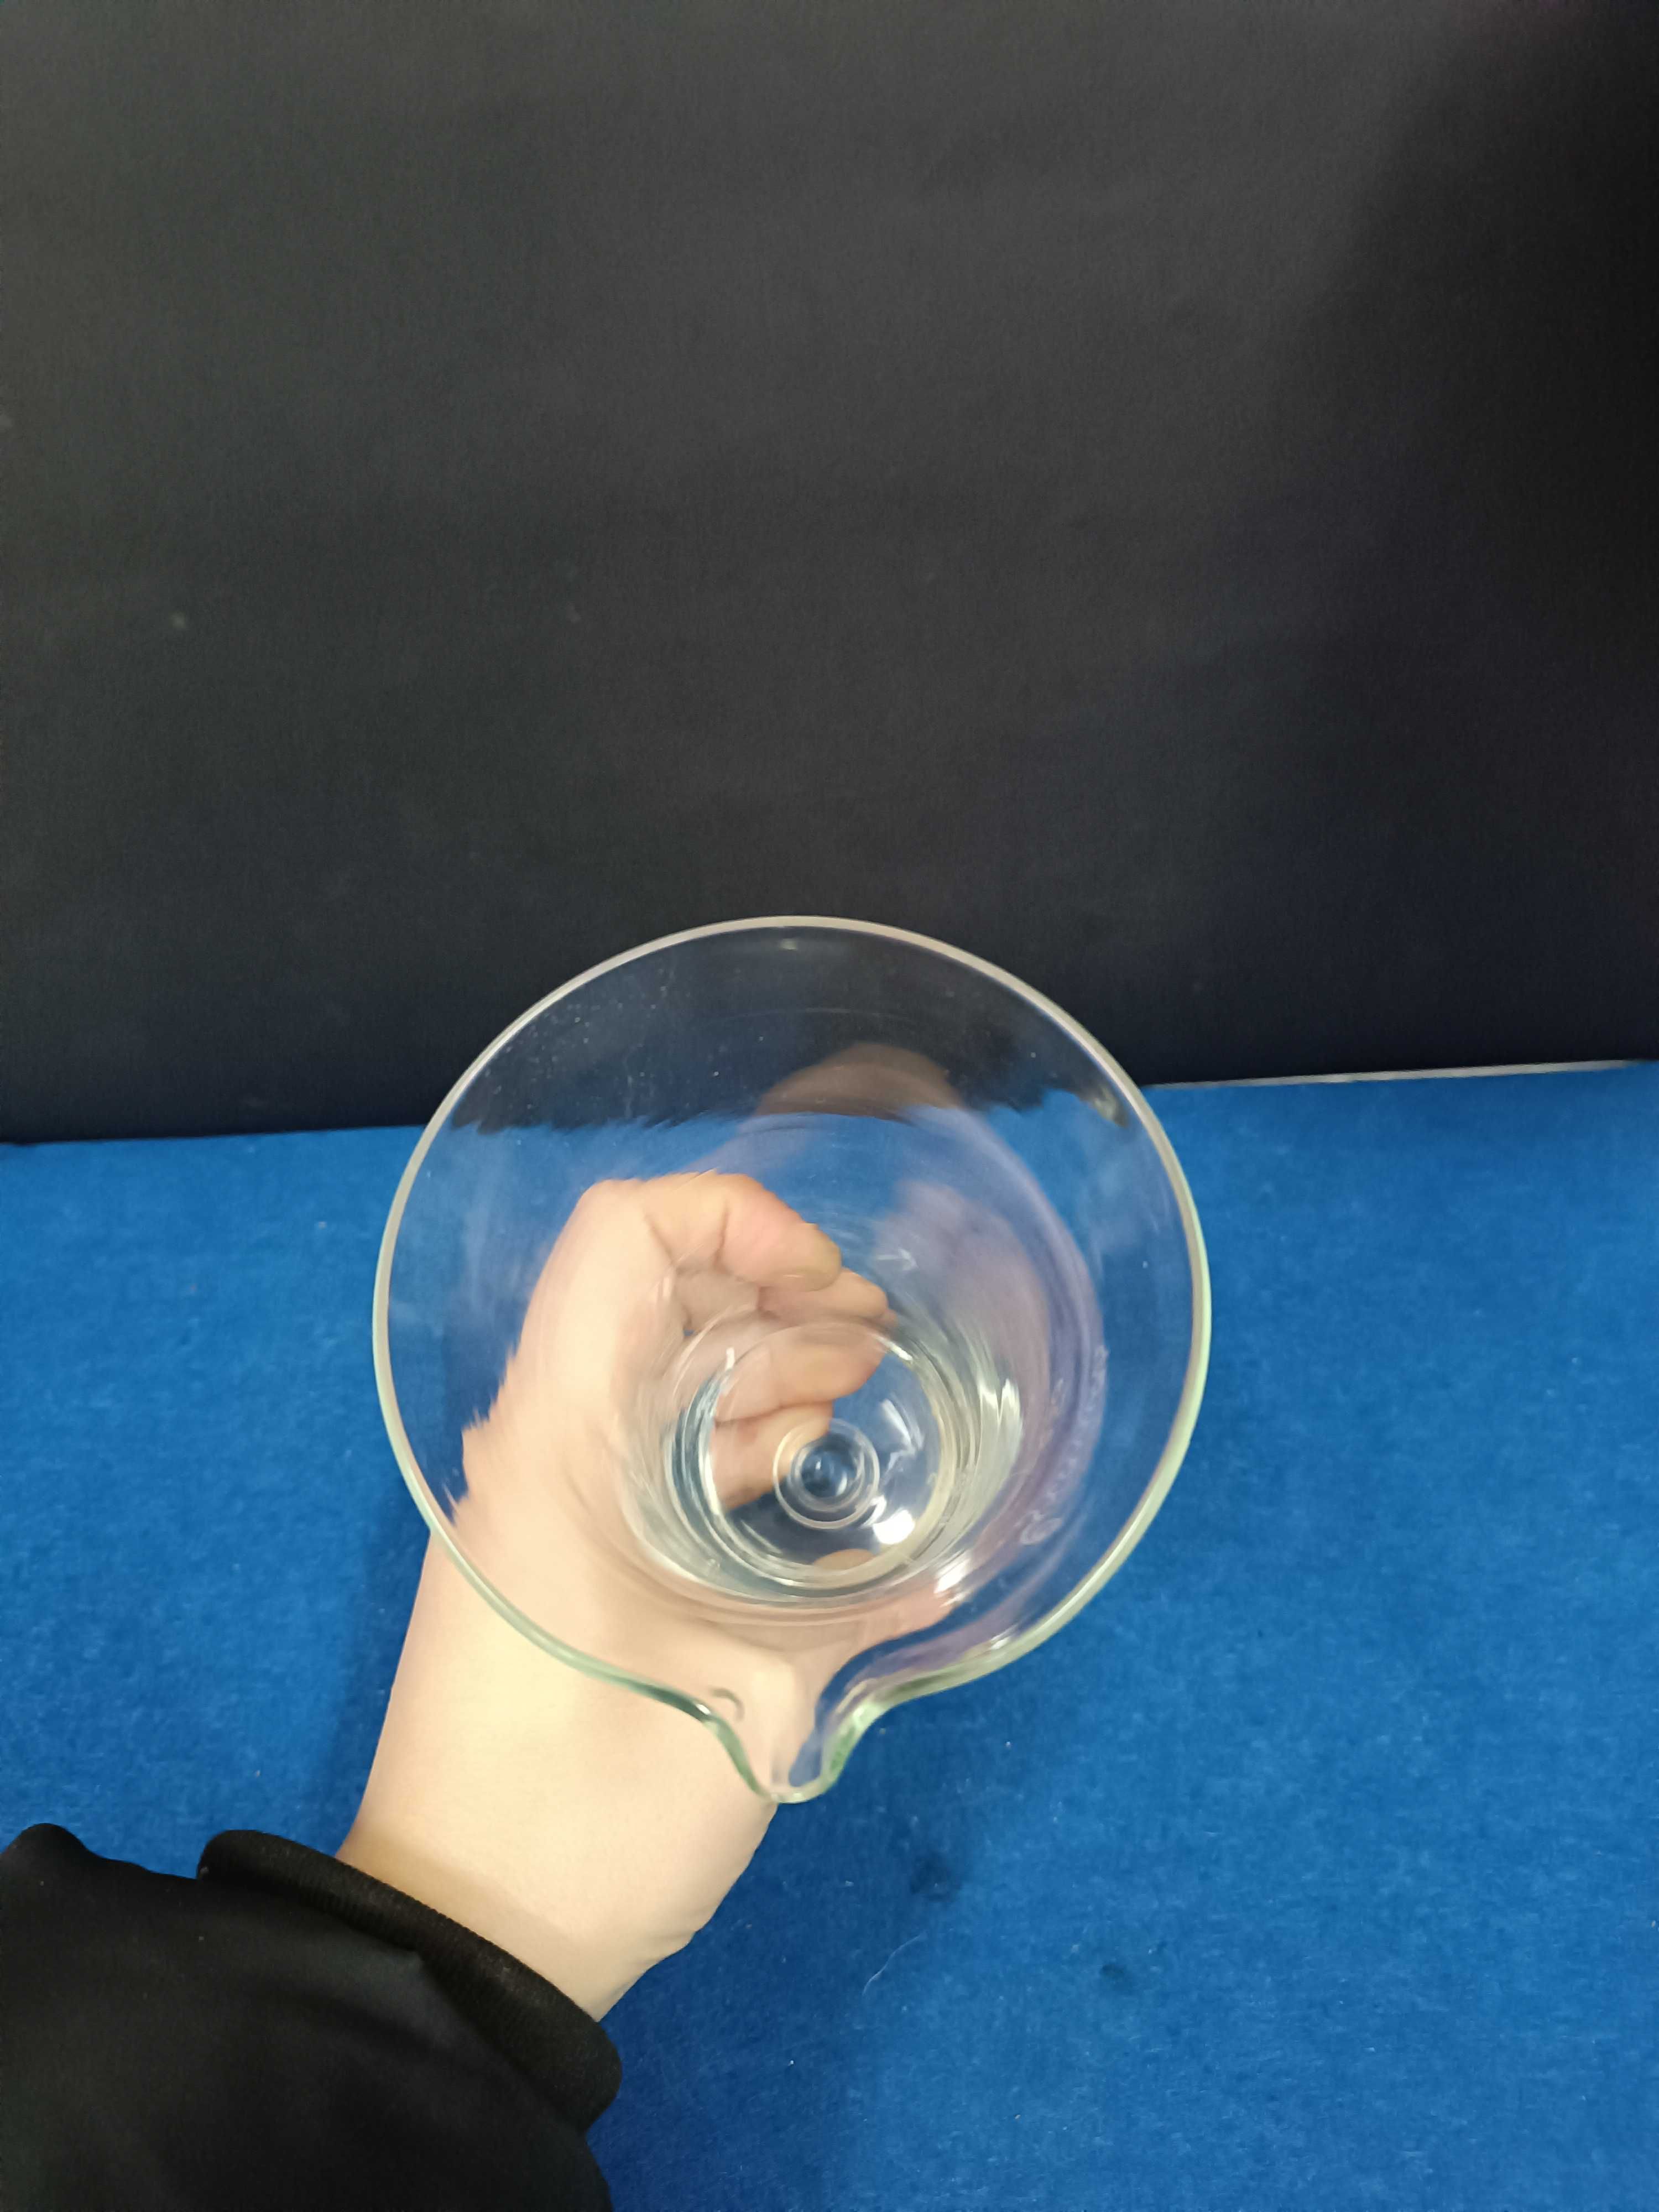 Fabuloso medidor em vidro, com formato muito incomum